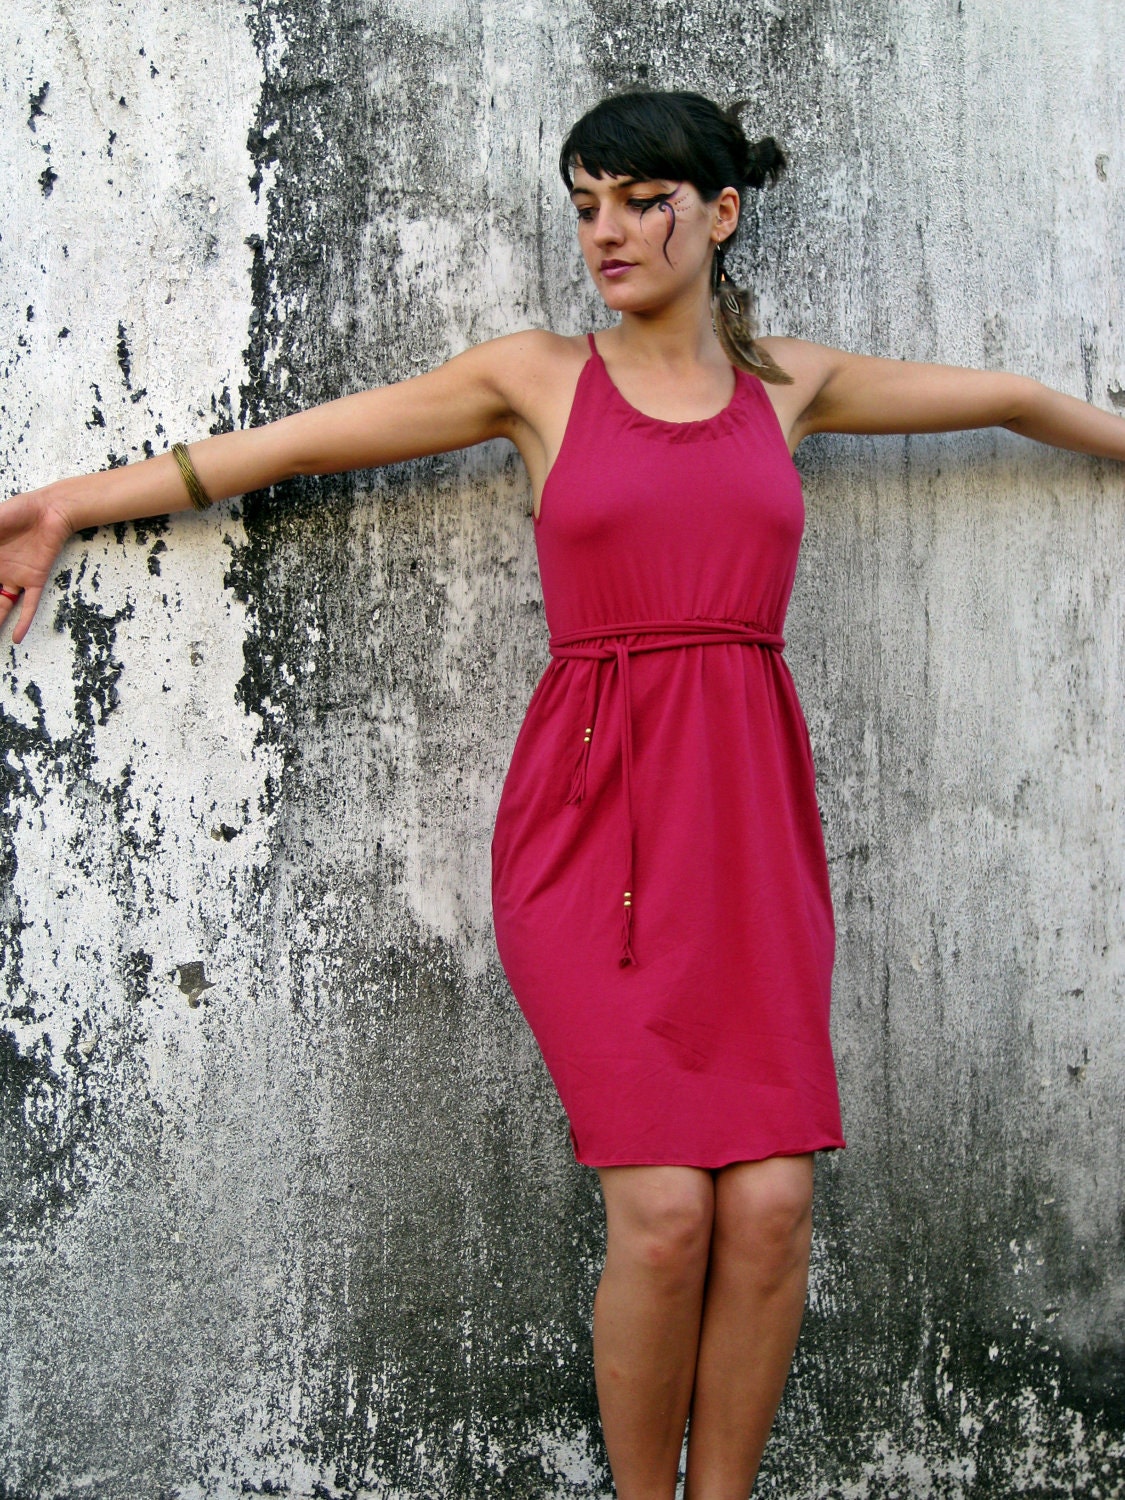 SALE-20% off- short halter red dress with fringe belt - Picarona